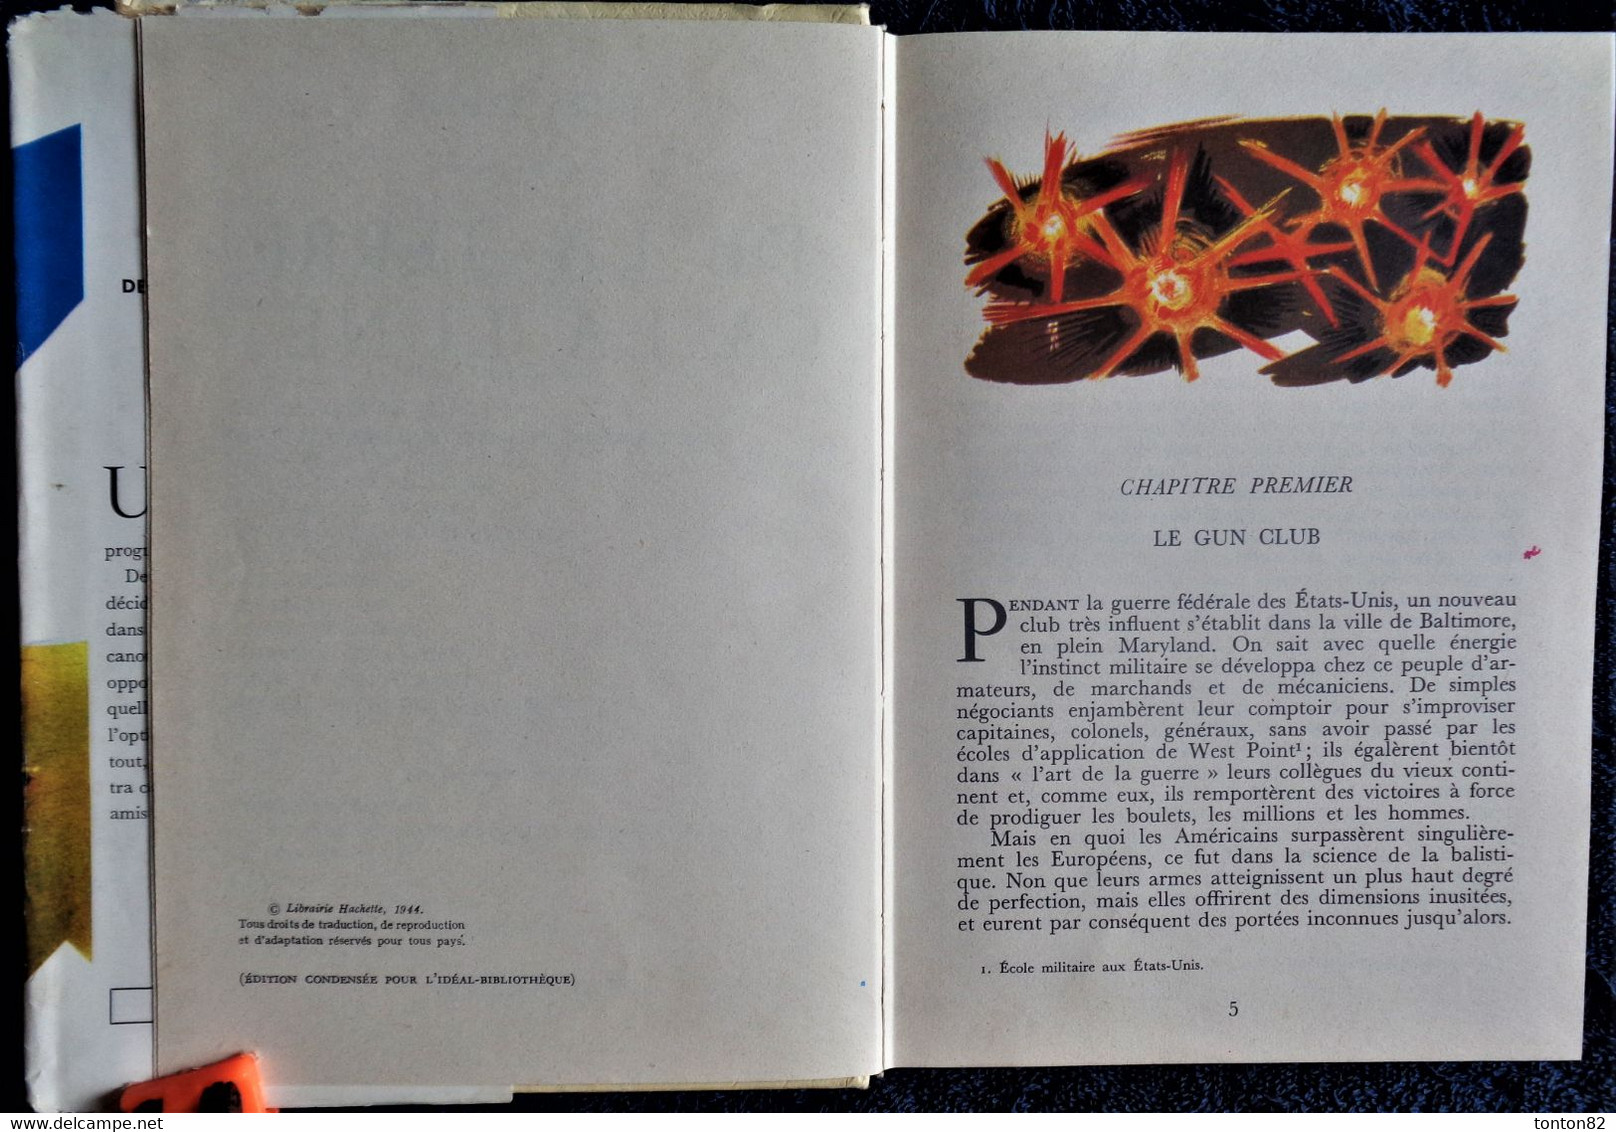 Jules Verne - De La Terre à La Lune - Idéal Bibliothèque N° 213 - ( 1964 ) . - Ideal Bibliotheque